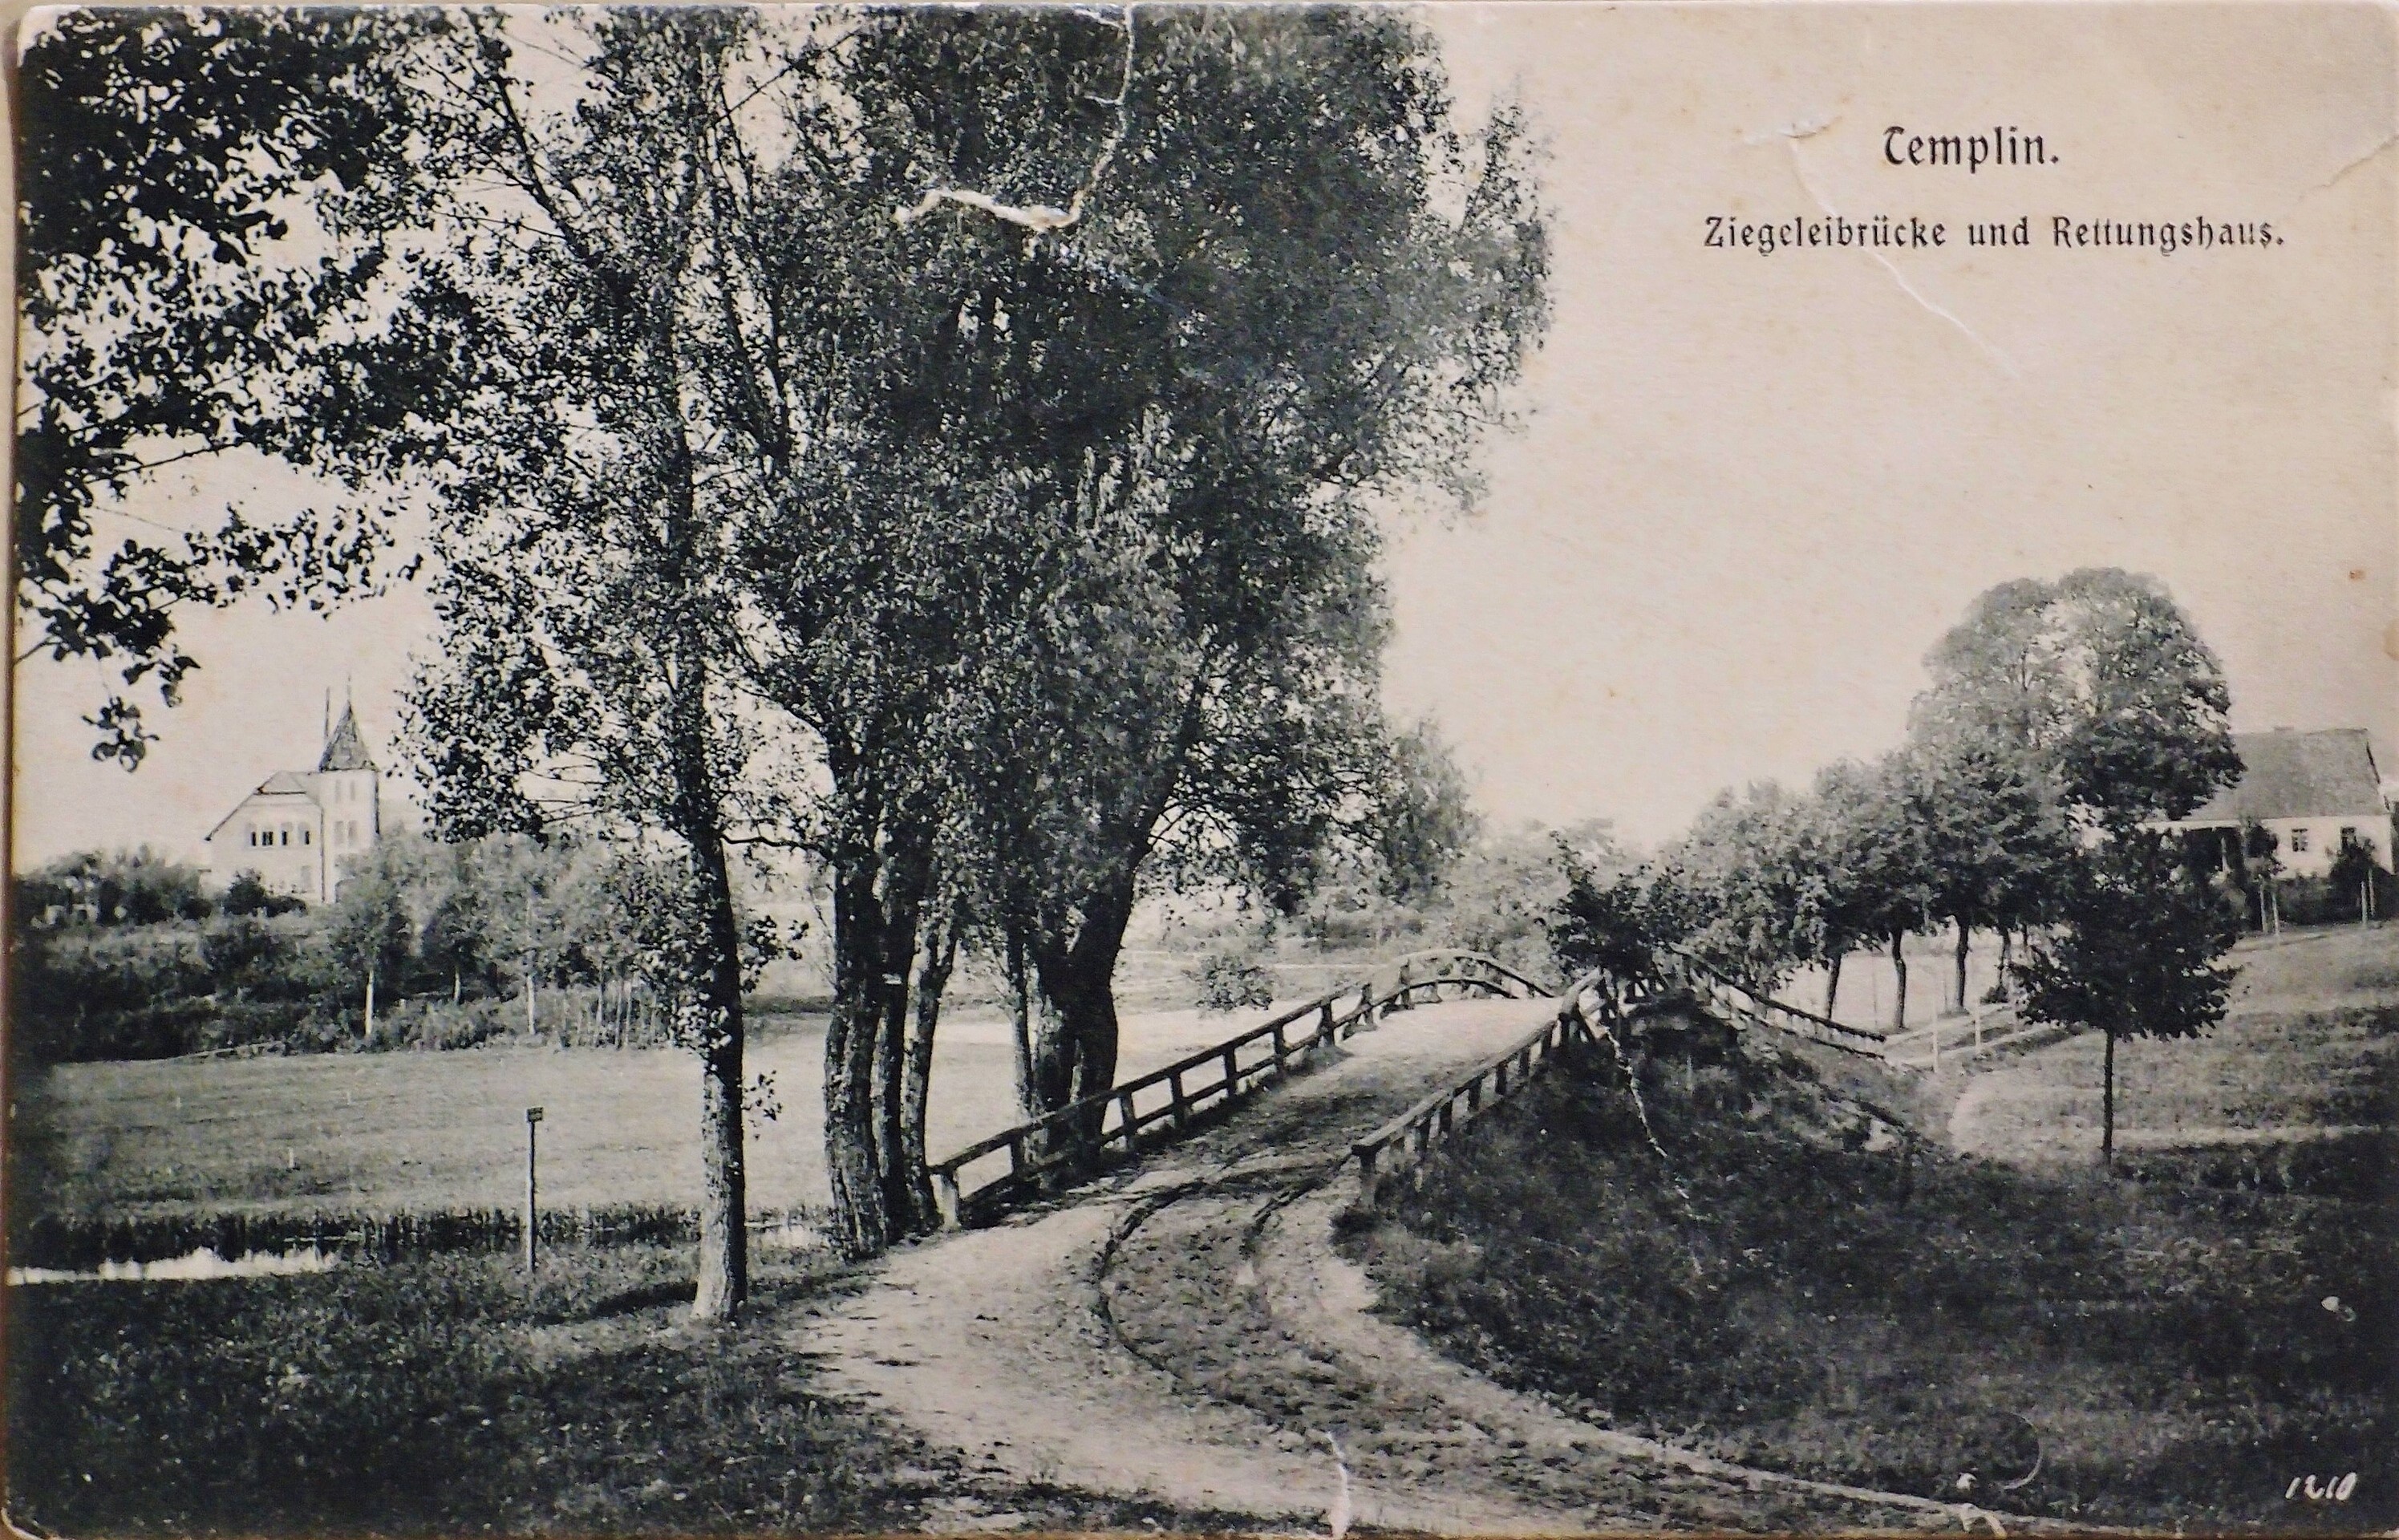 Ansichtskarte "Ziegeleibrücke und Rettungshaus" in Templin (Museum für Stadtgeschichte Templin CC BY-NC-SA)